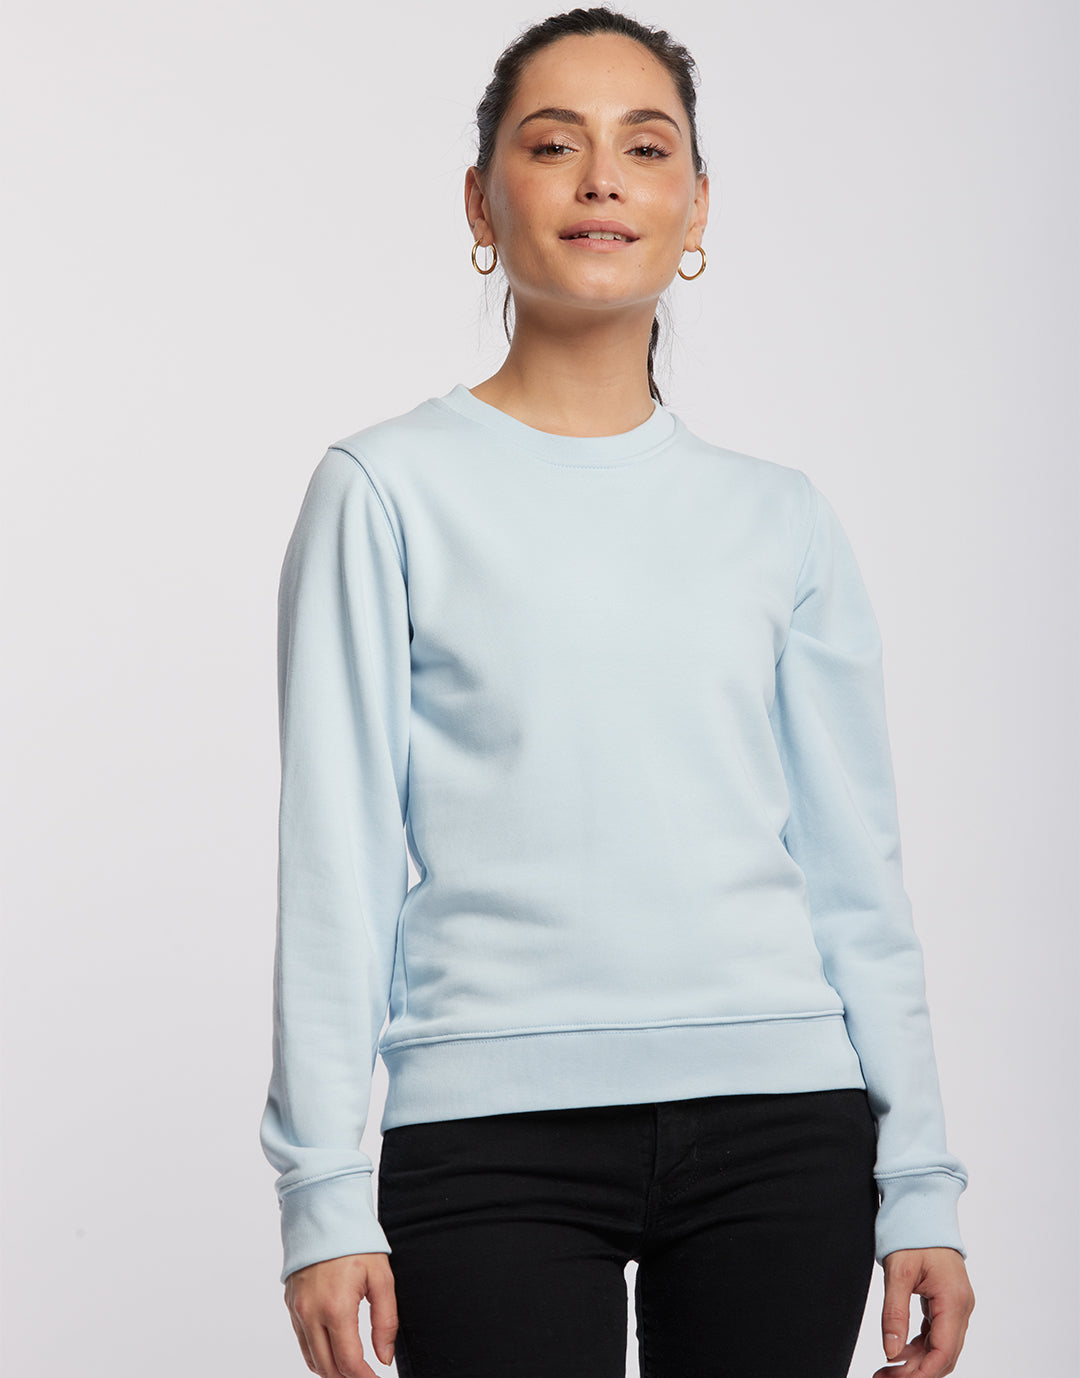 Voltaire - Sweatshirt coton bio unisexe - couleurs